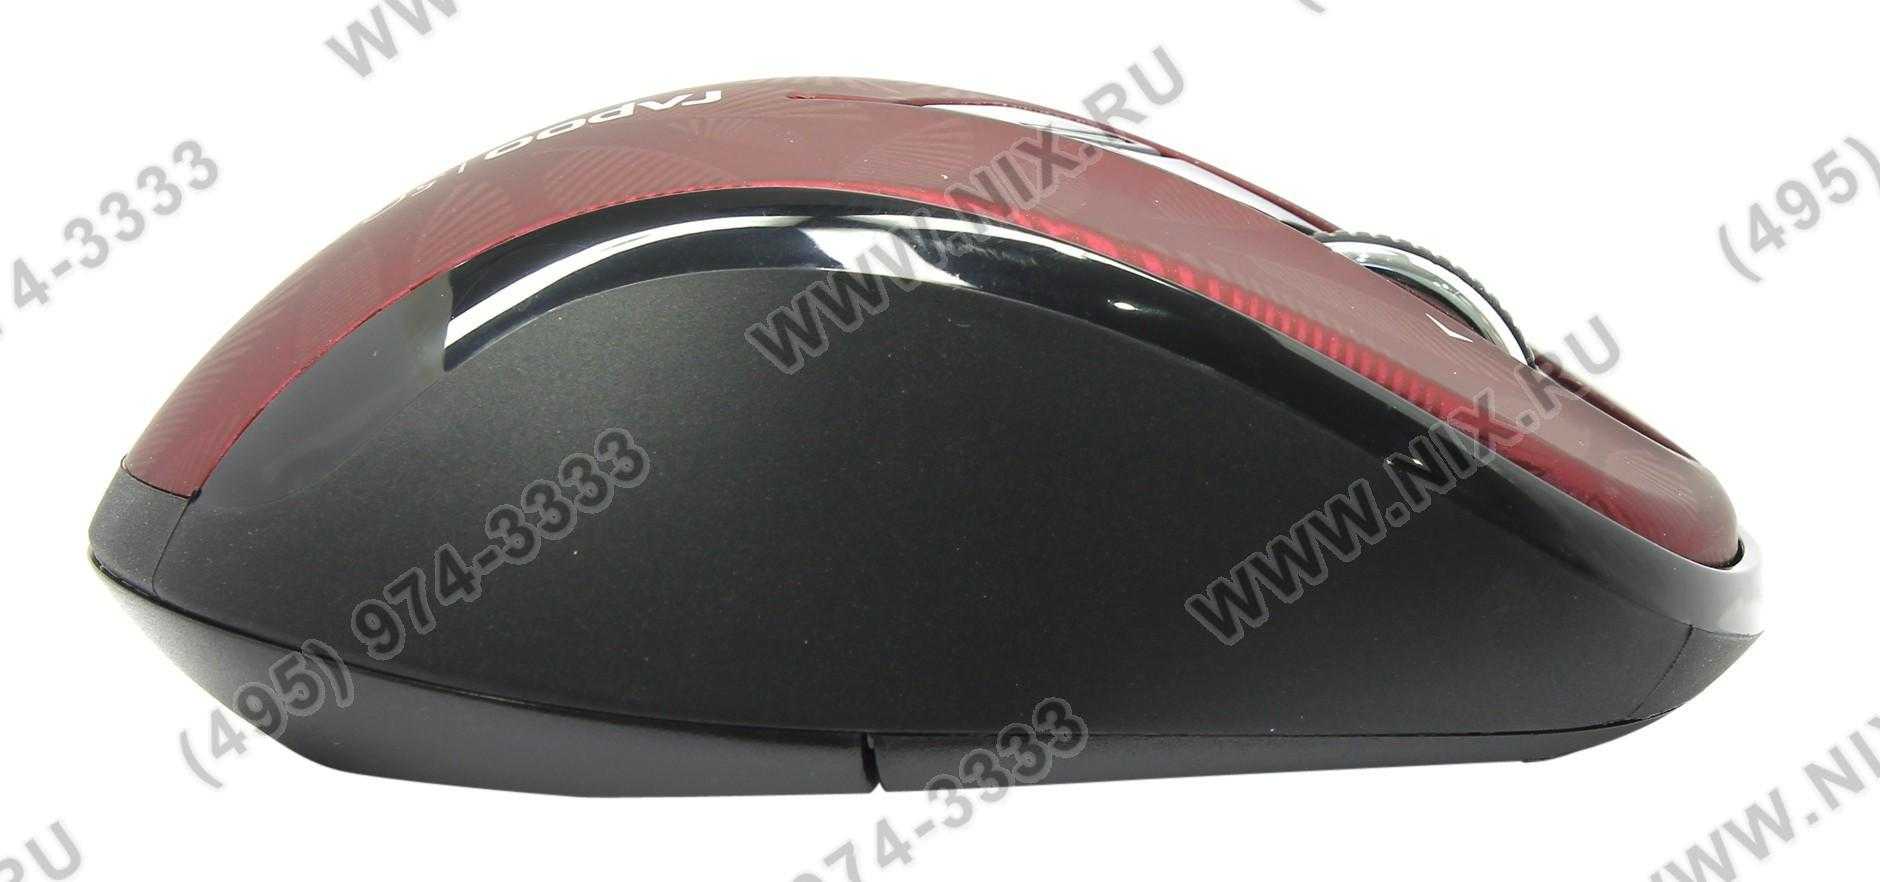 Беспроводная мышь rapoo 7100p red — купить, цена и характеристики, отзывы